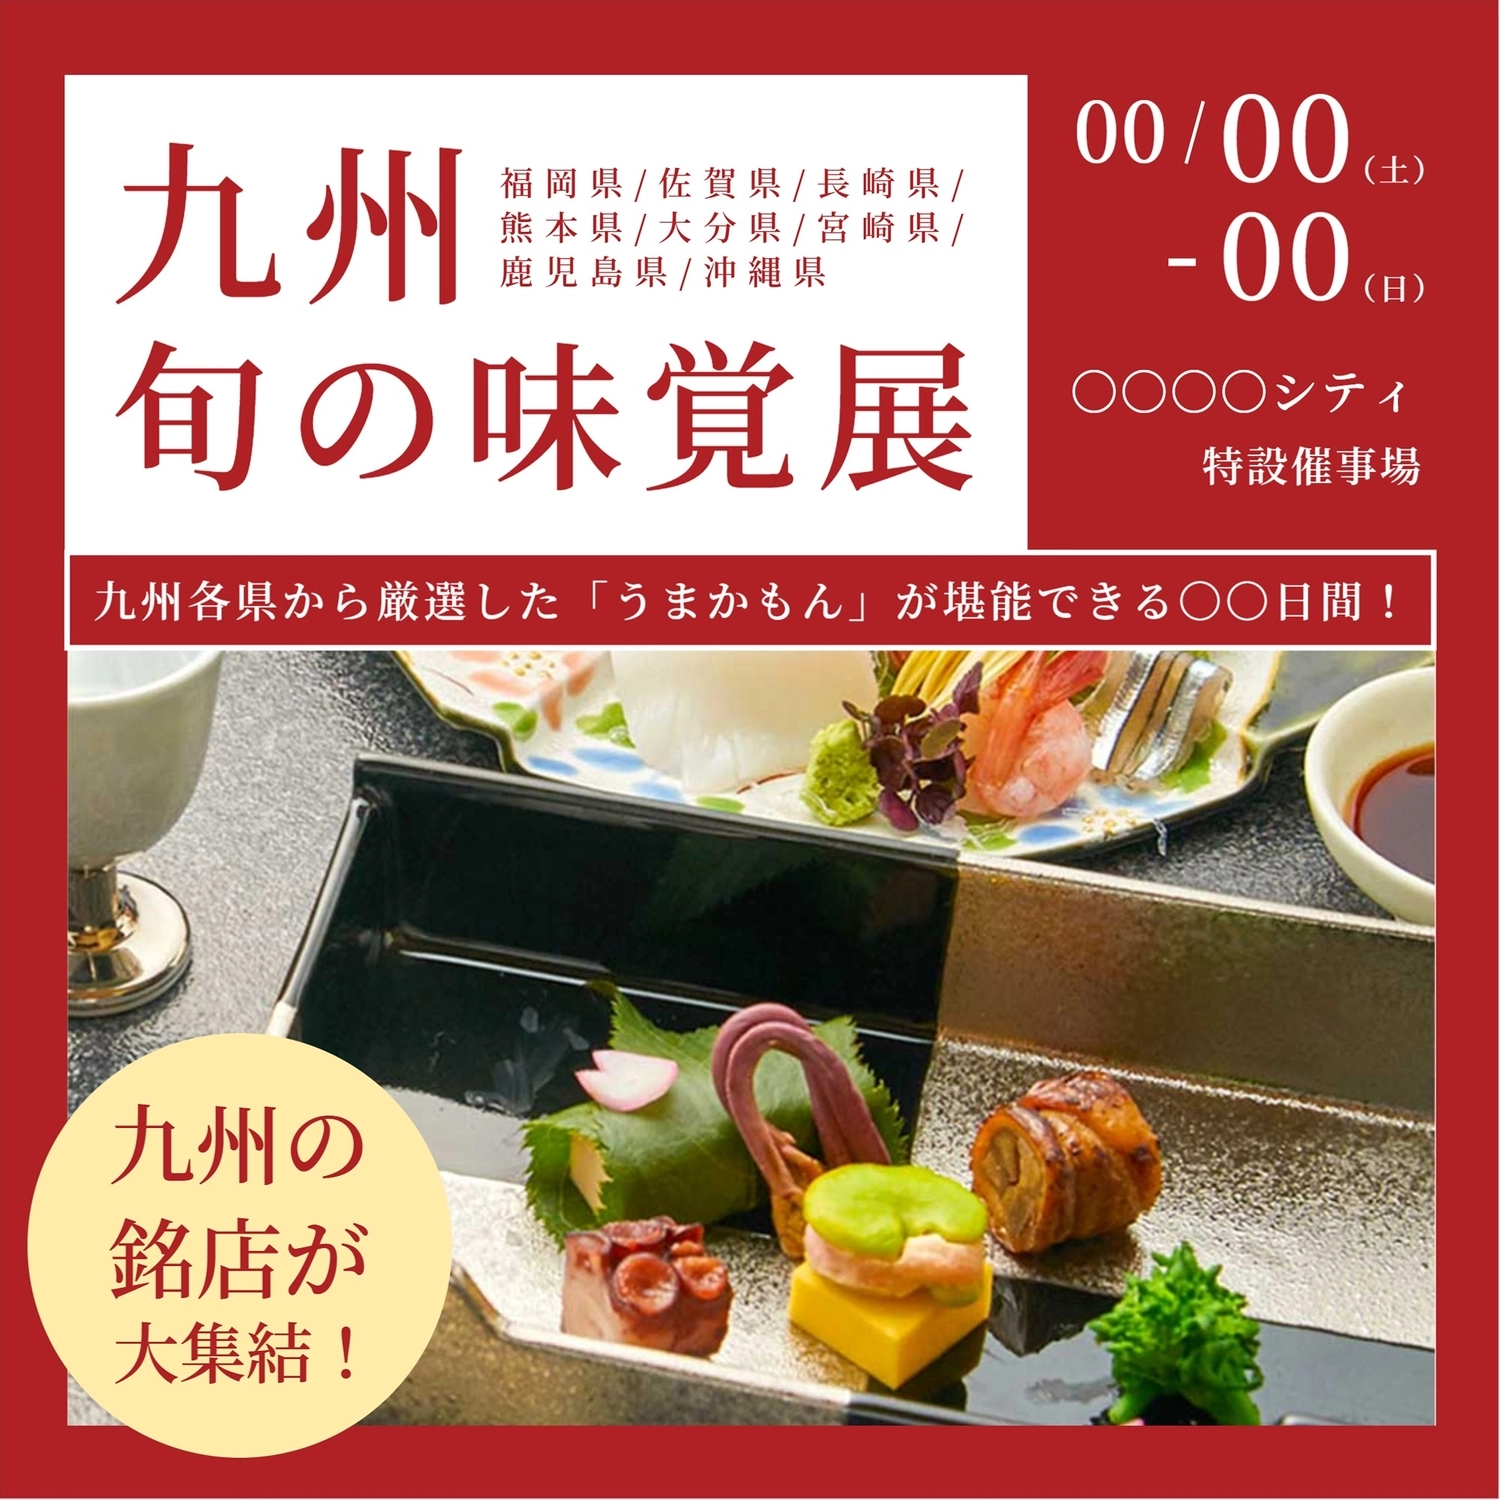 九州物産展テンプレート, Mingdian, product exhibition, sashimi, Instagram Post template